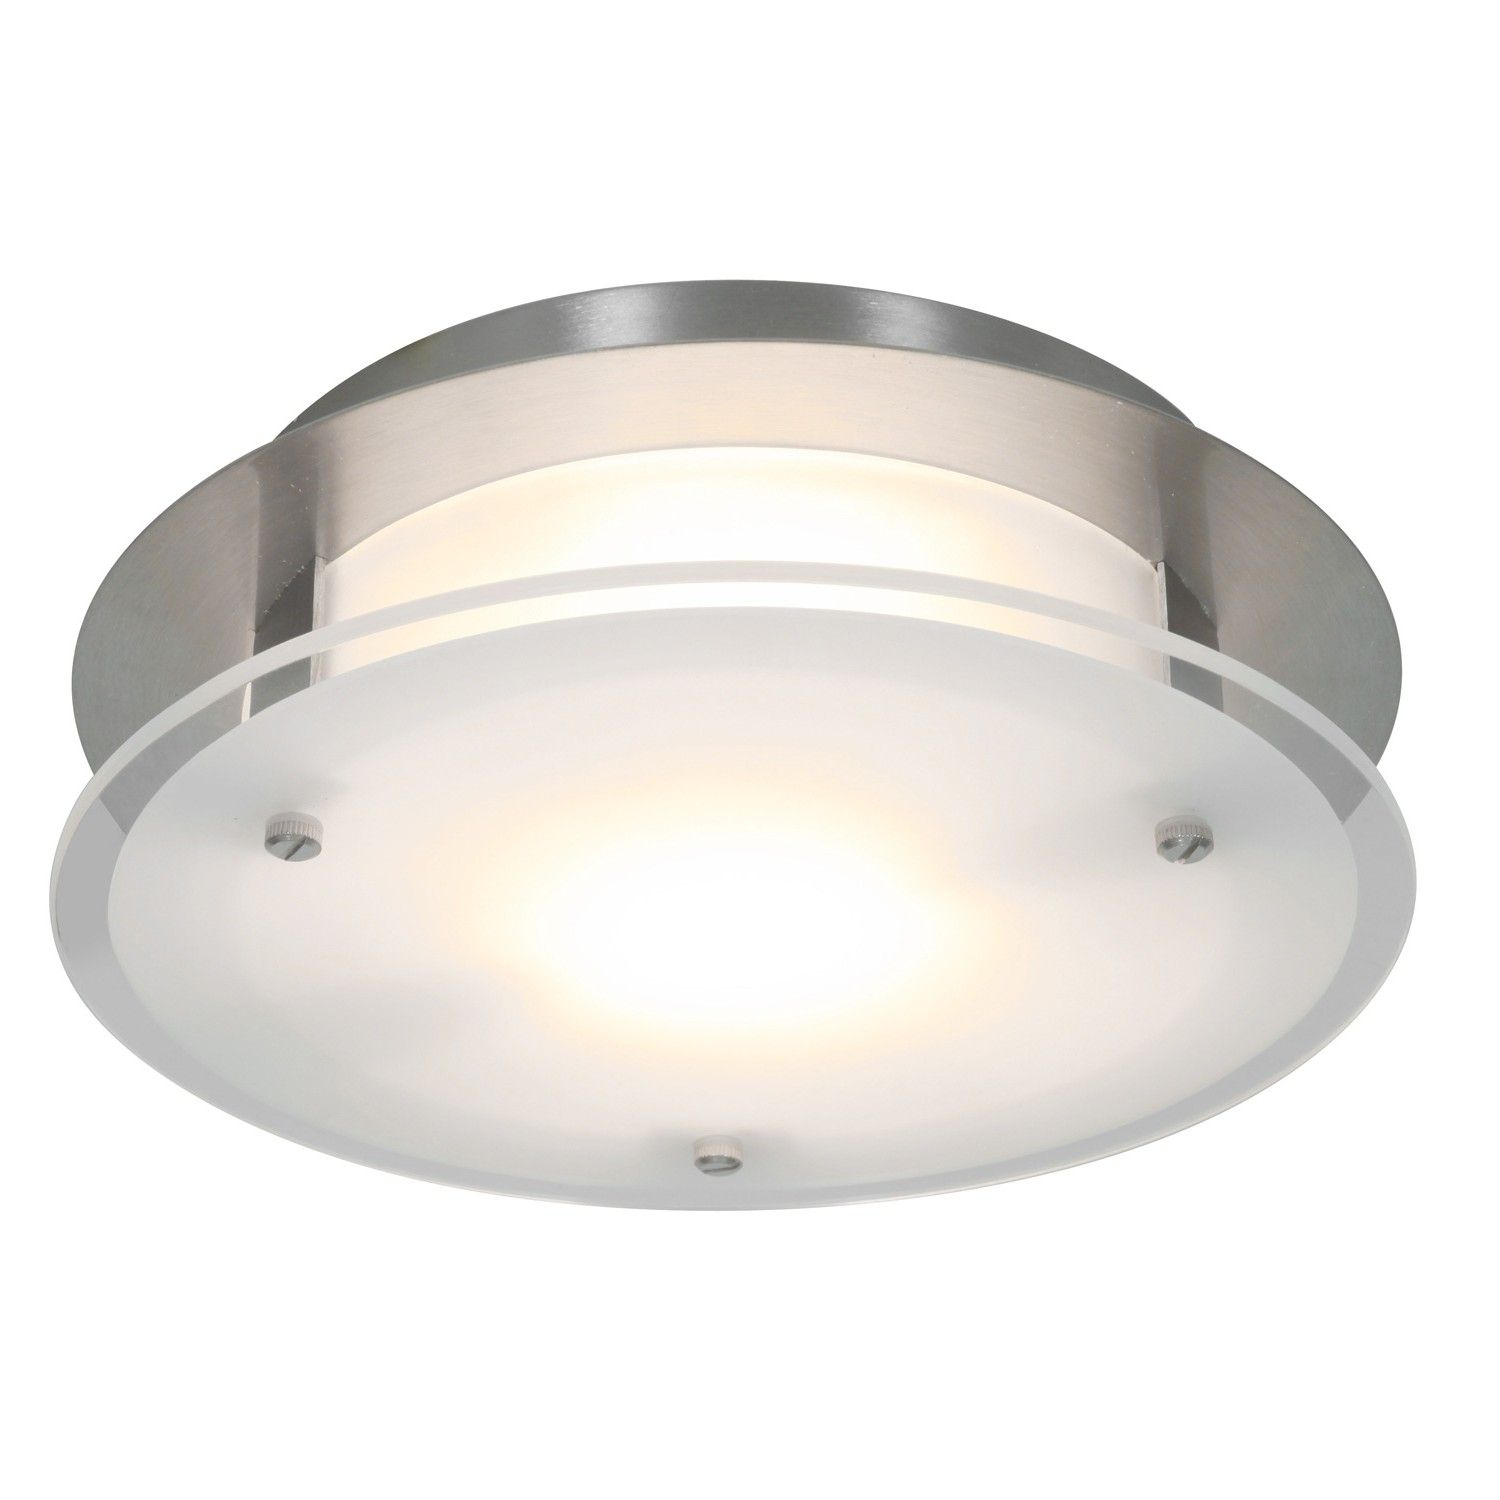 Luxury Ductless Bathroom Fan With Light Bathroom Fan Light inside size 1500 X 1500